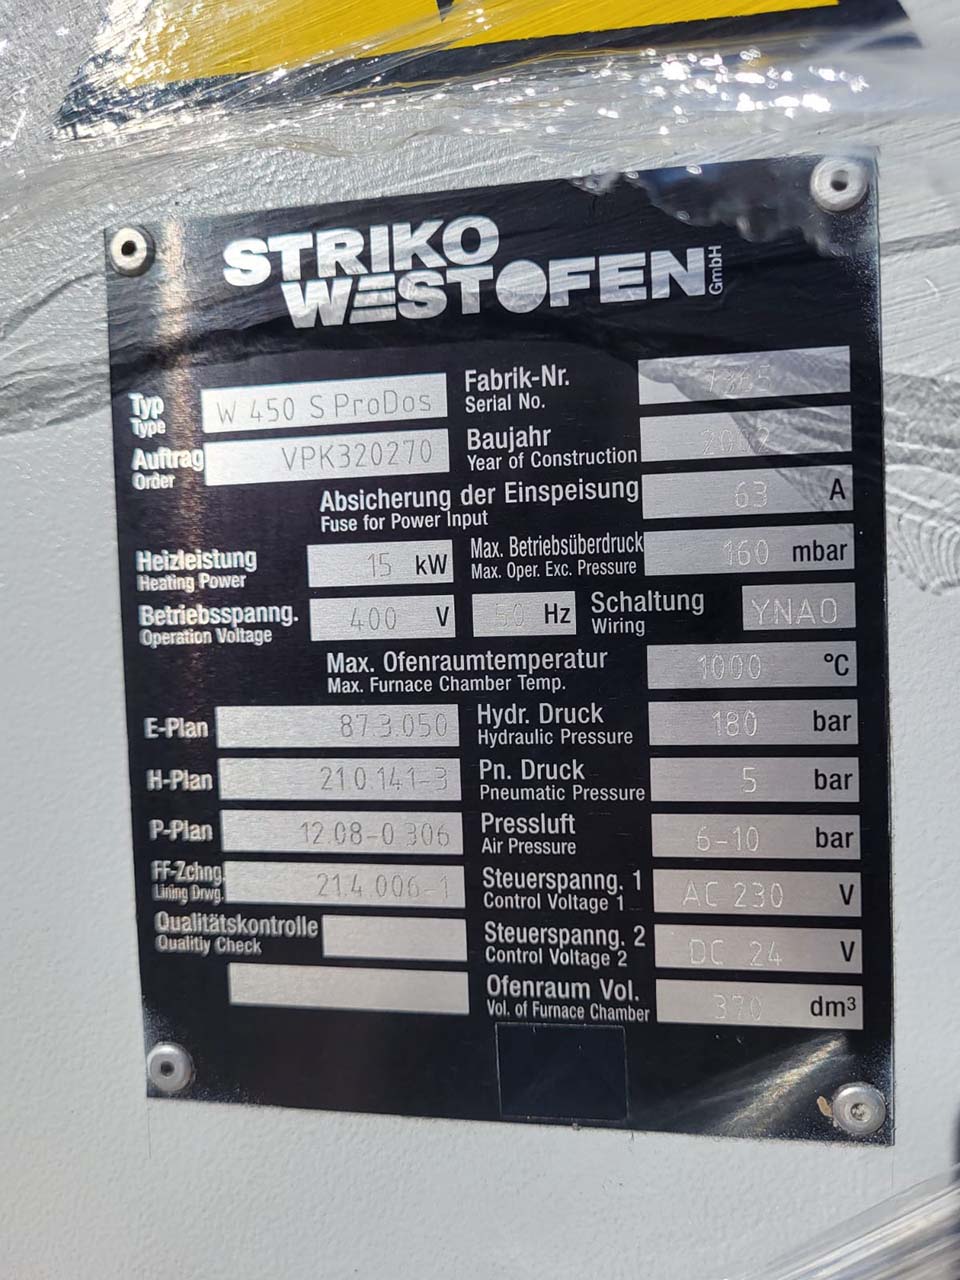 StrikoWestofen W 650 SL ProDos XP Horno dosificador O1756, usado